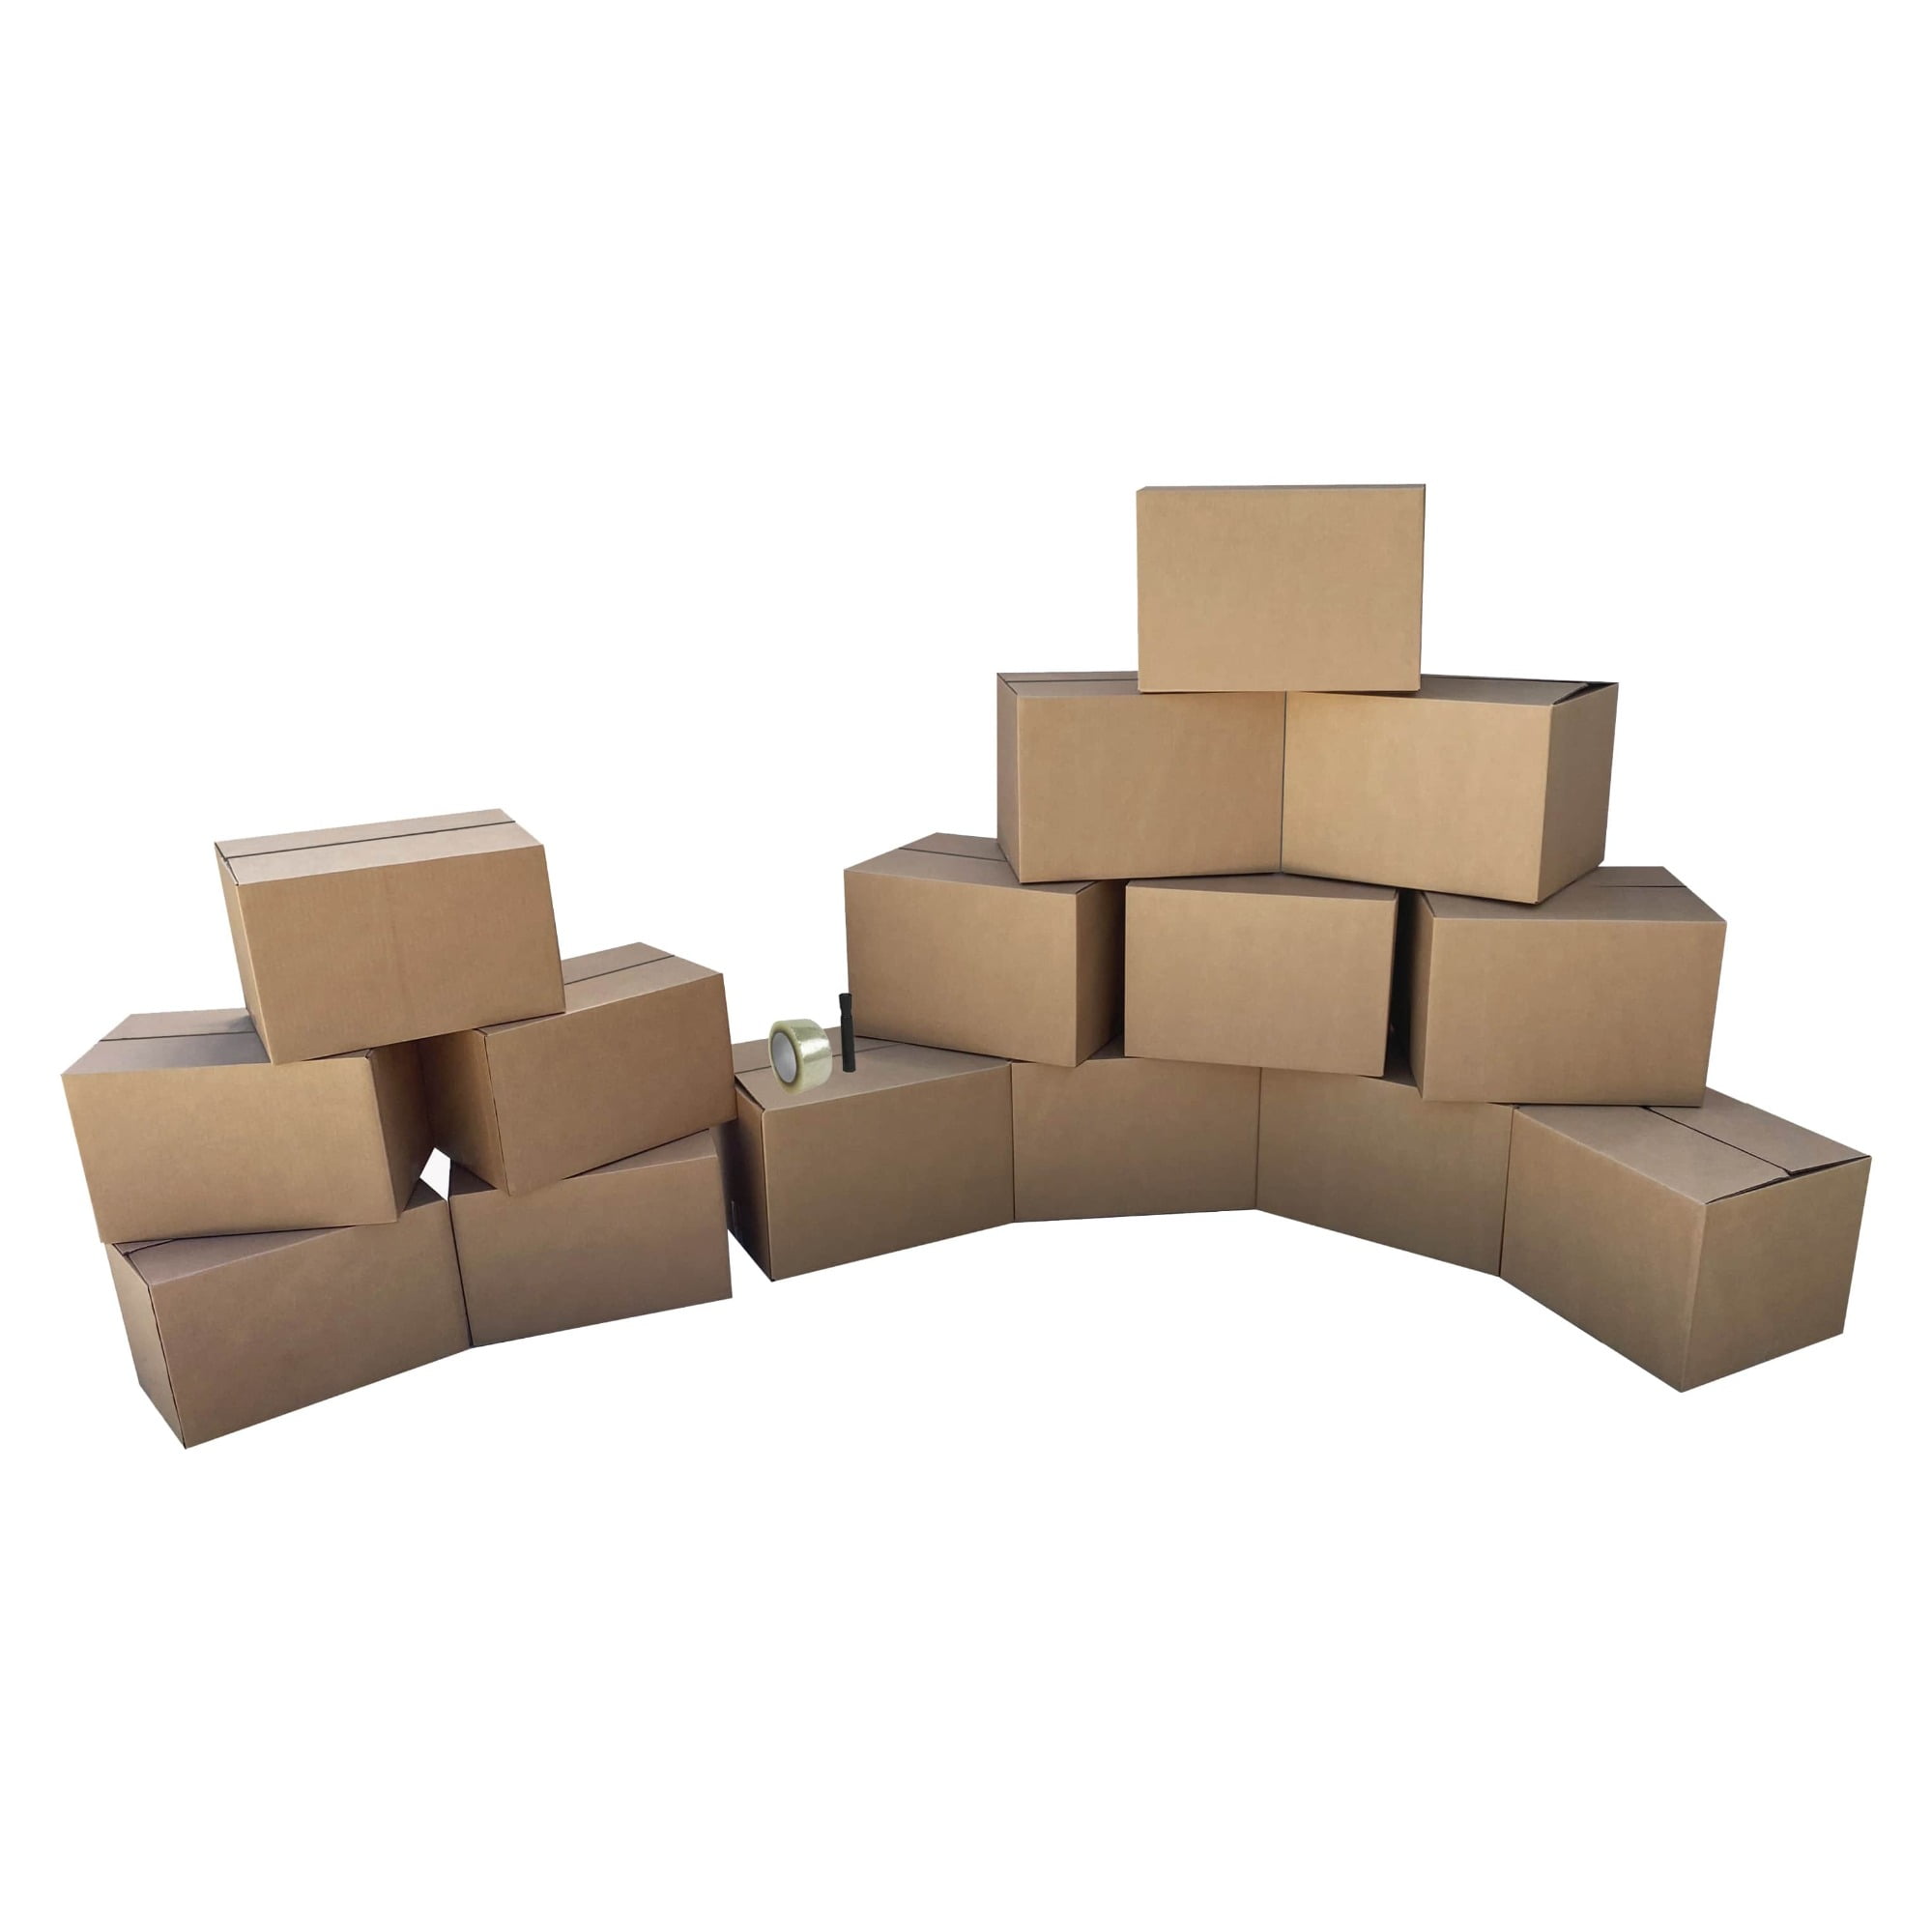 UBOXES Brand kit de cajas para mudanza, 1 habitación, económicas, 15 cajas  medianas y pequeñas y suministros de mudanza